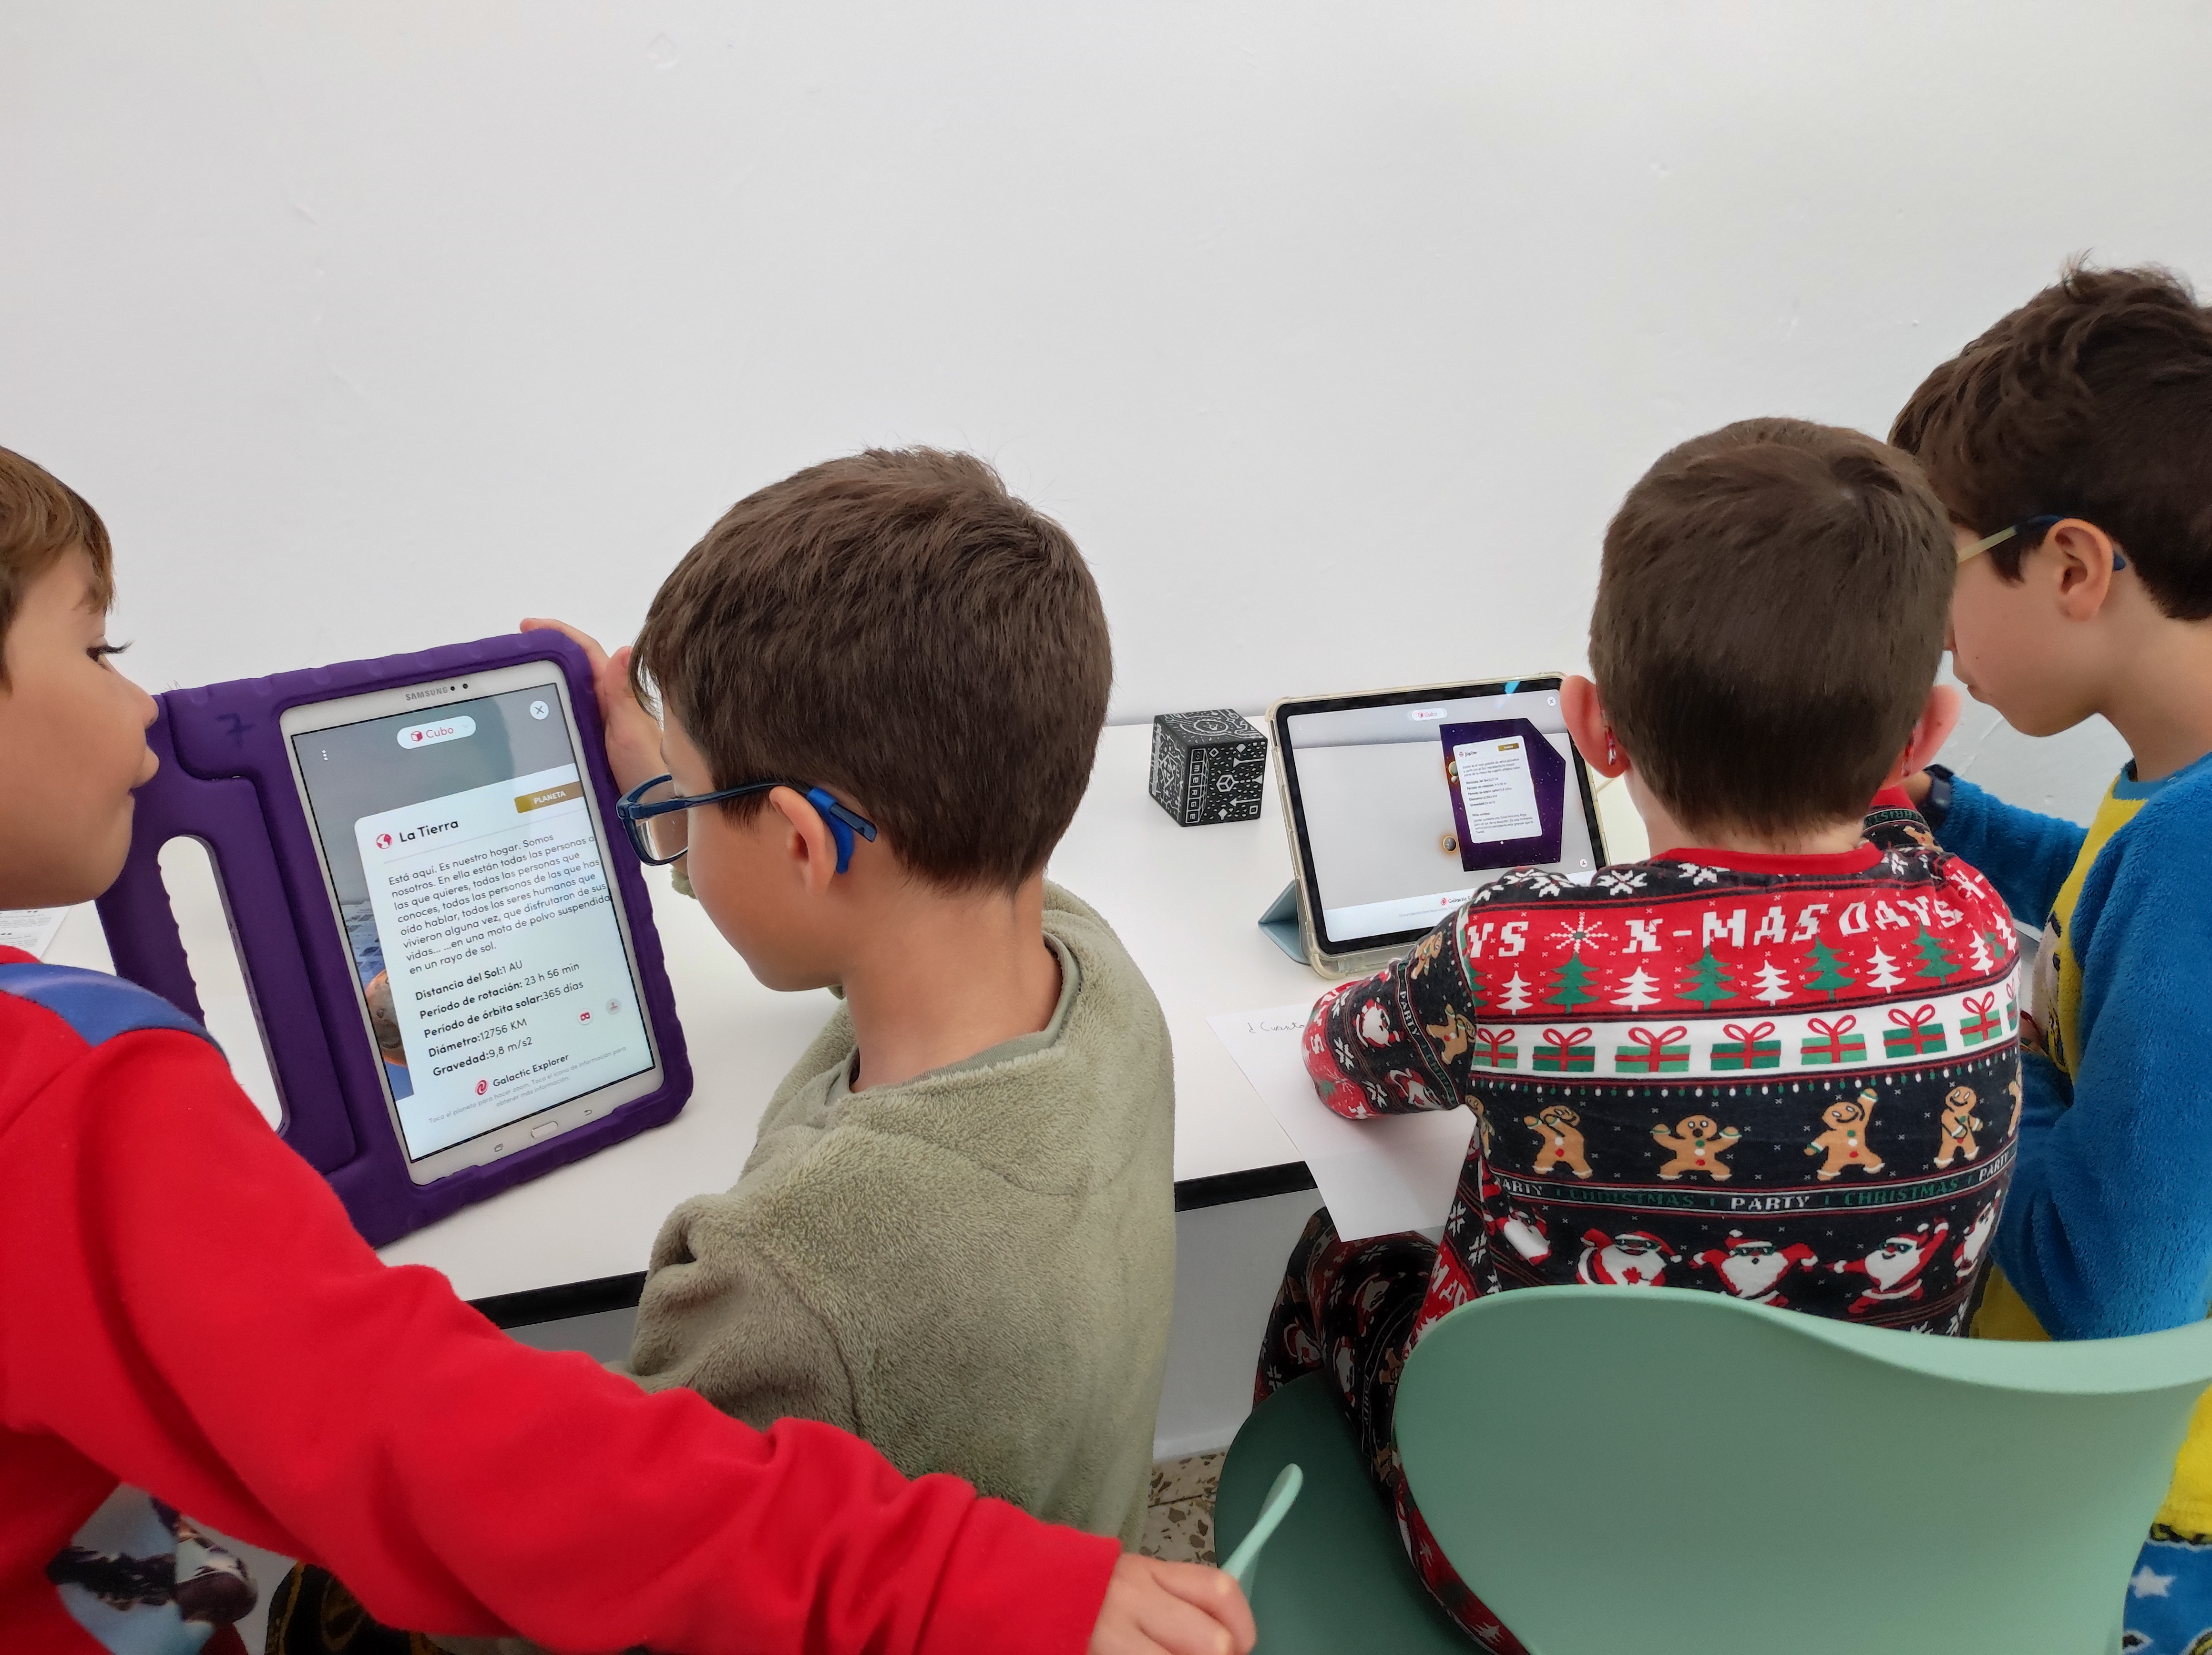 Estudiantes trabajando la realidad aumentada con la app Merge Object Viewer en las tablets